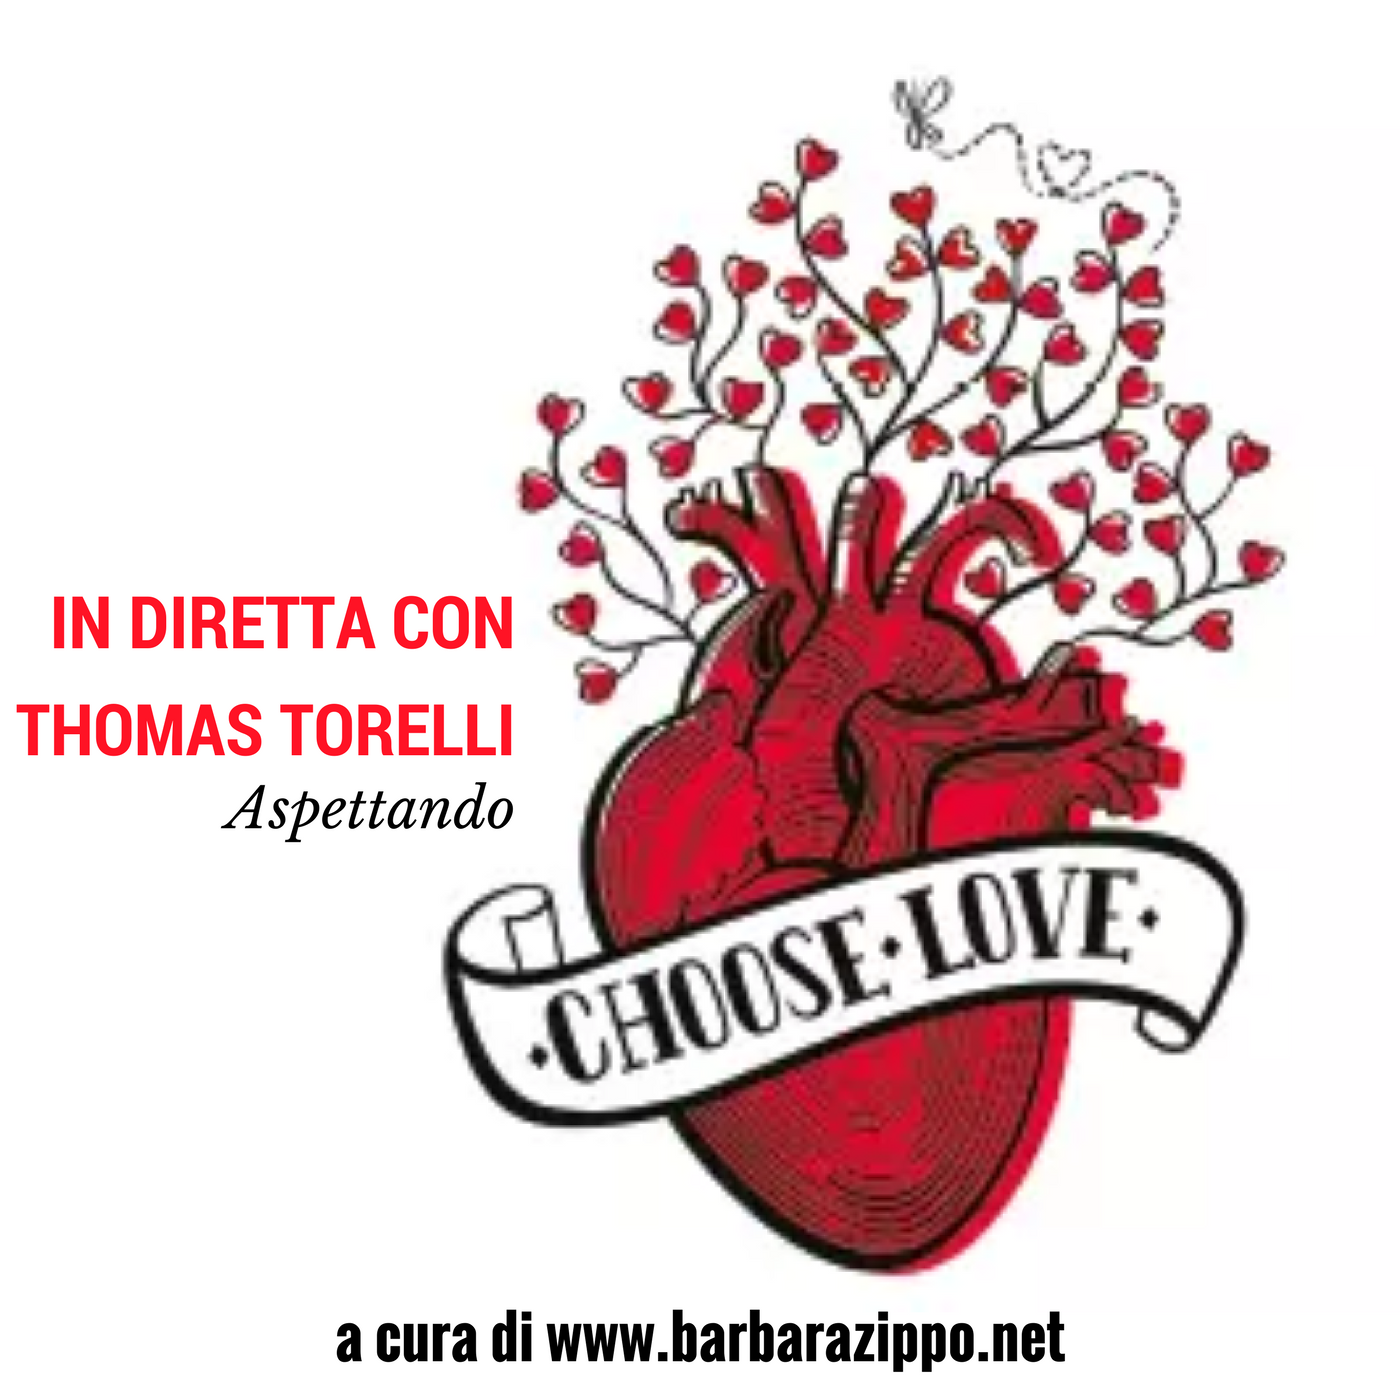 Choose Love in diretta con Thomas Torelli